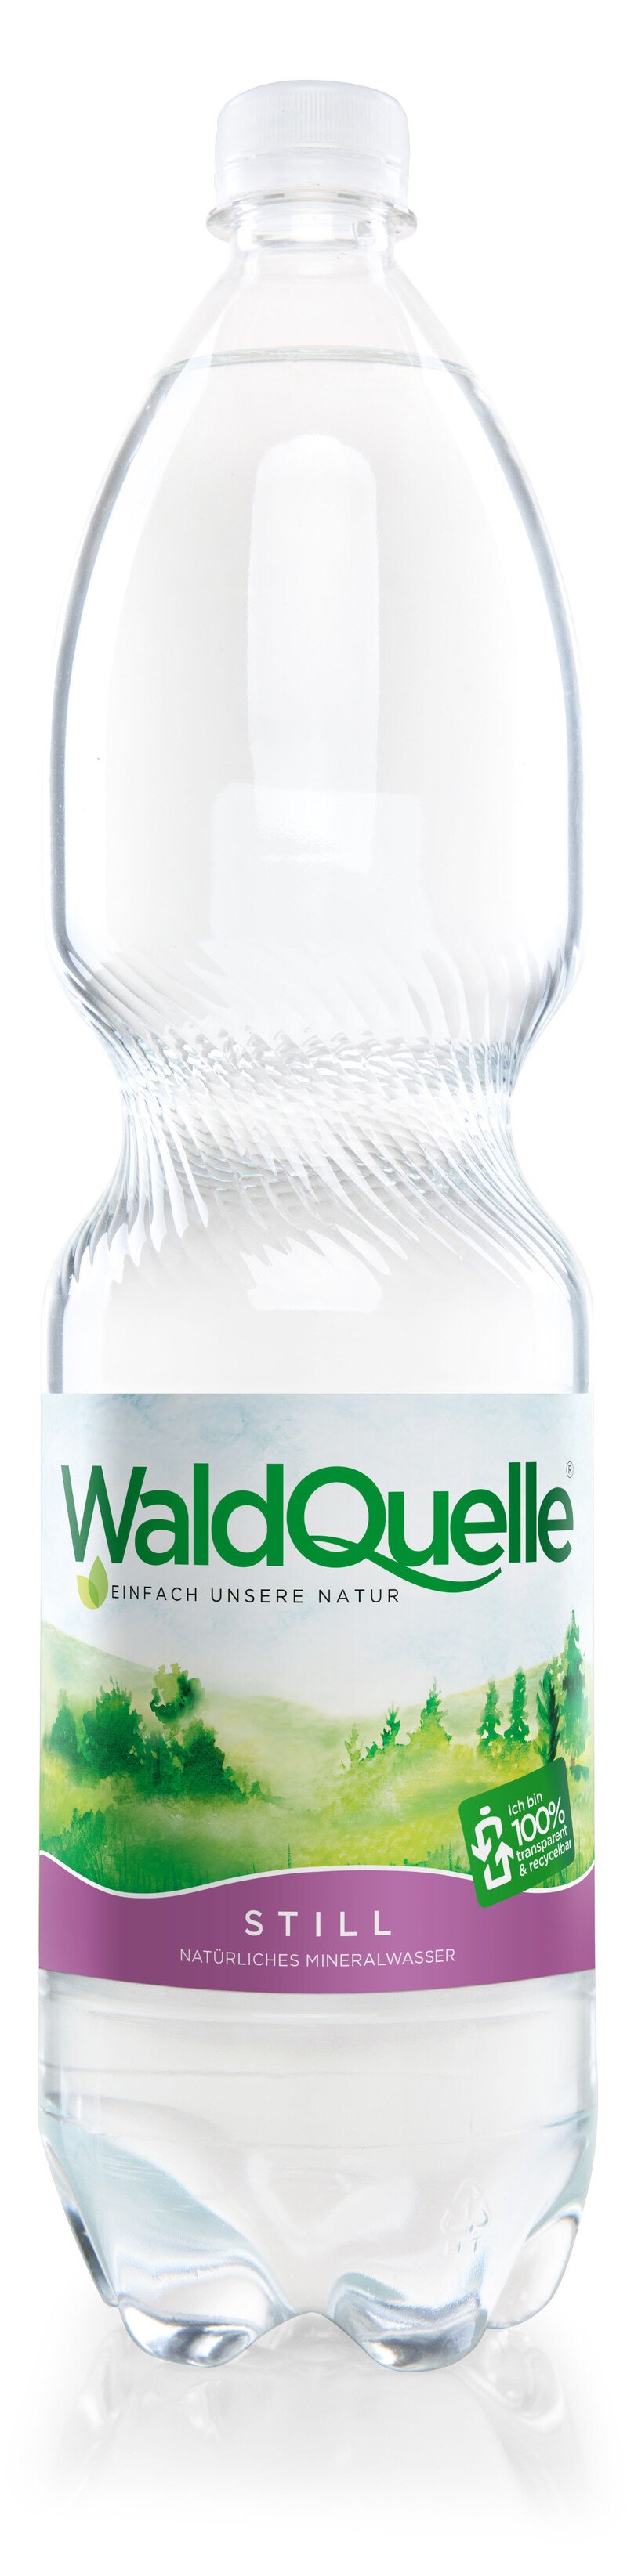 Waldquelle still PET Tr. (6 Fl. à 1,5 Lt.) 